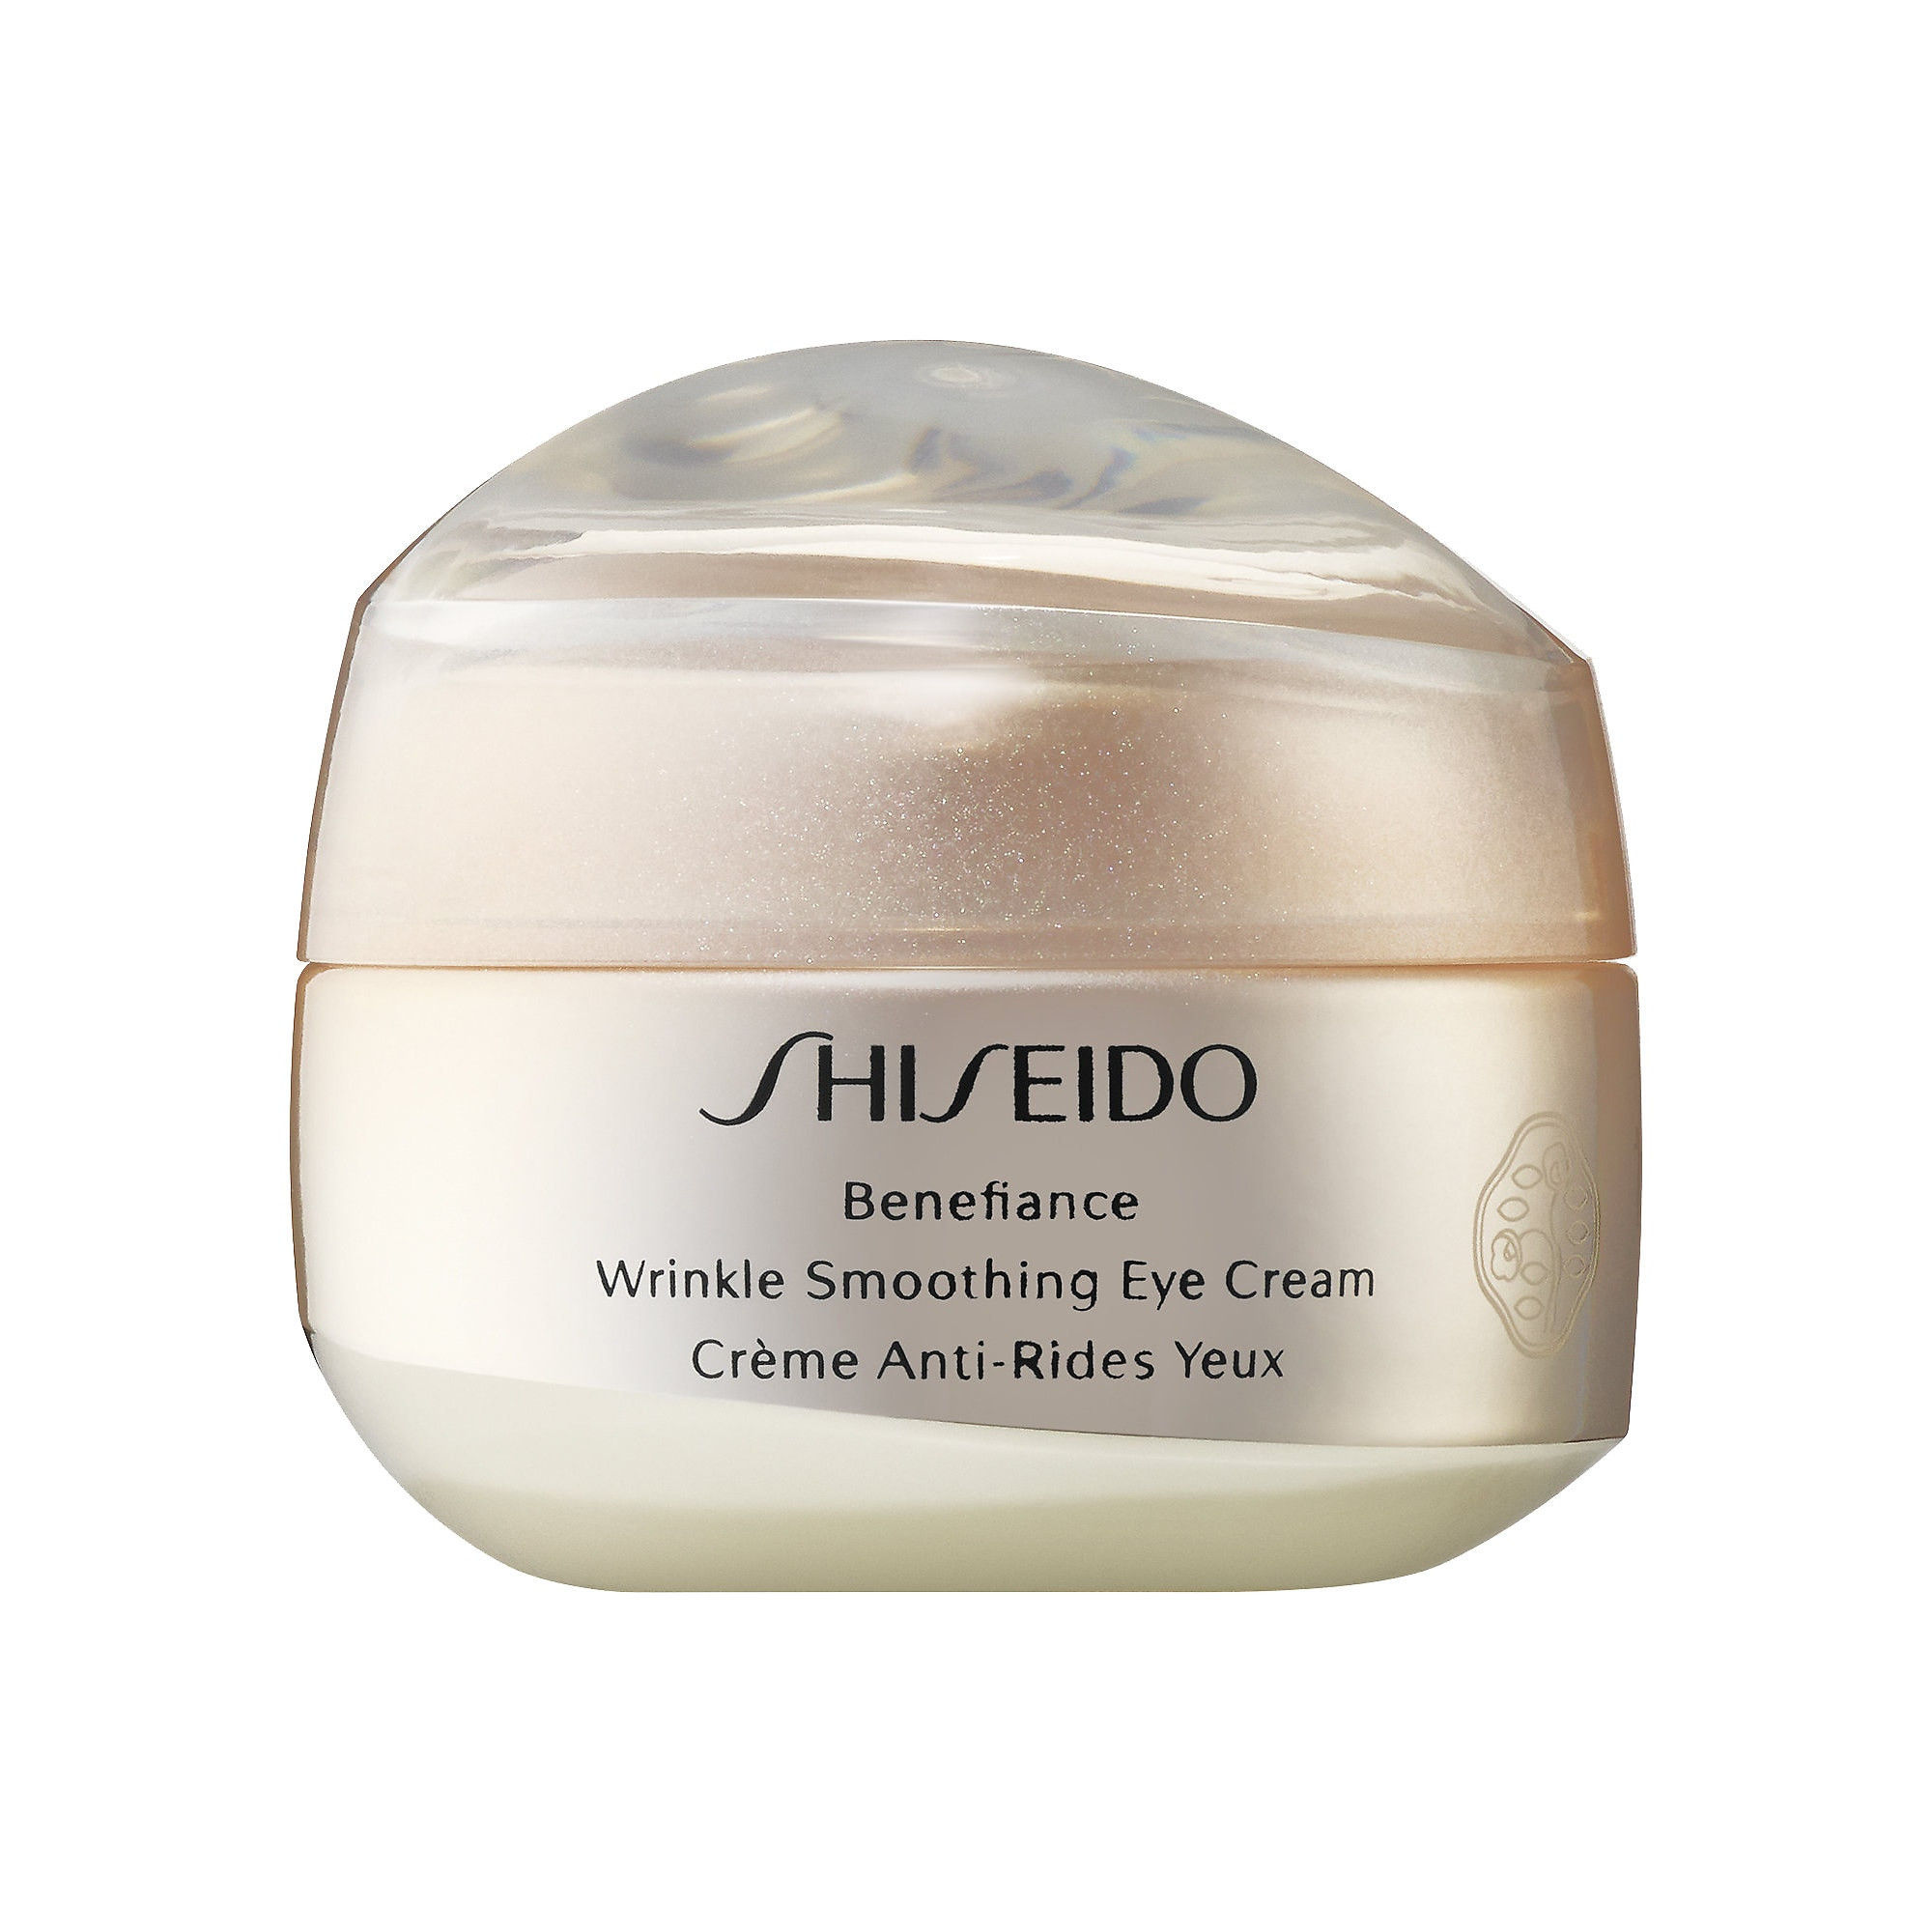 Shiseido wrinkle smoothing. Shiseido Benefiance Eye Cream. Shiseido Benefiance Wrinkle Smoothing Eye Cream. Shiseido Wrinkle Smoothing Cream. Shiseido // крем Benefiance Wrinkle Smoothing Eye Cream 15ml.